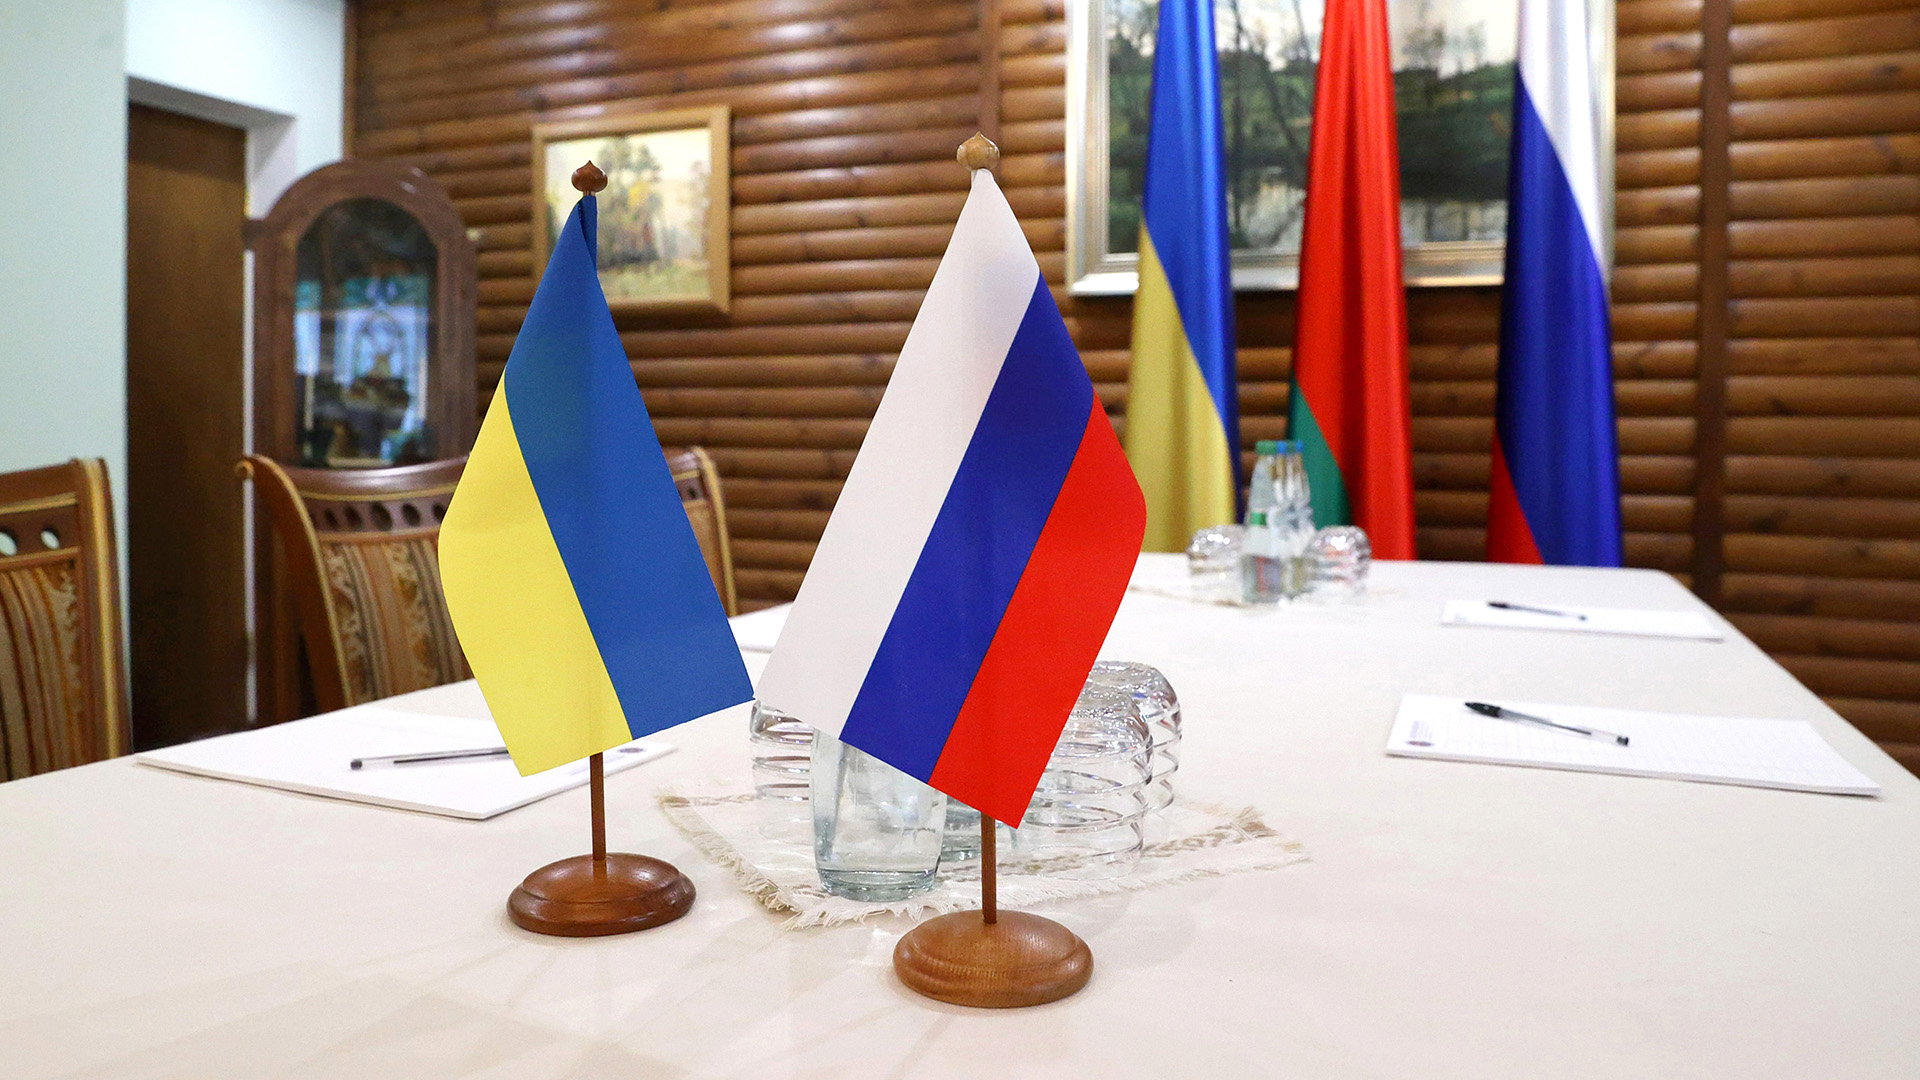 Eine russische und eine ukrainische Fahne auf einem Tisch